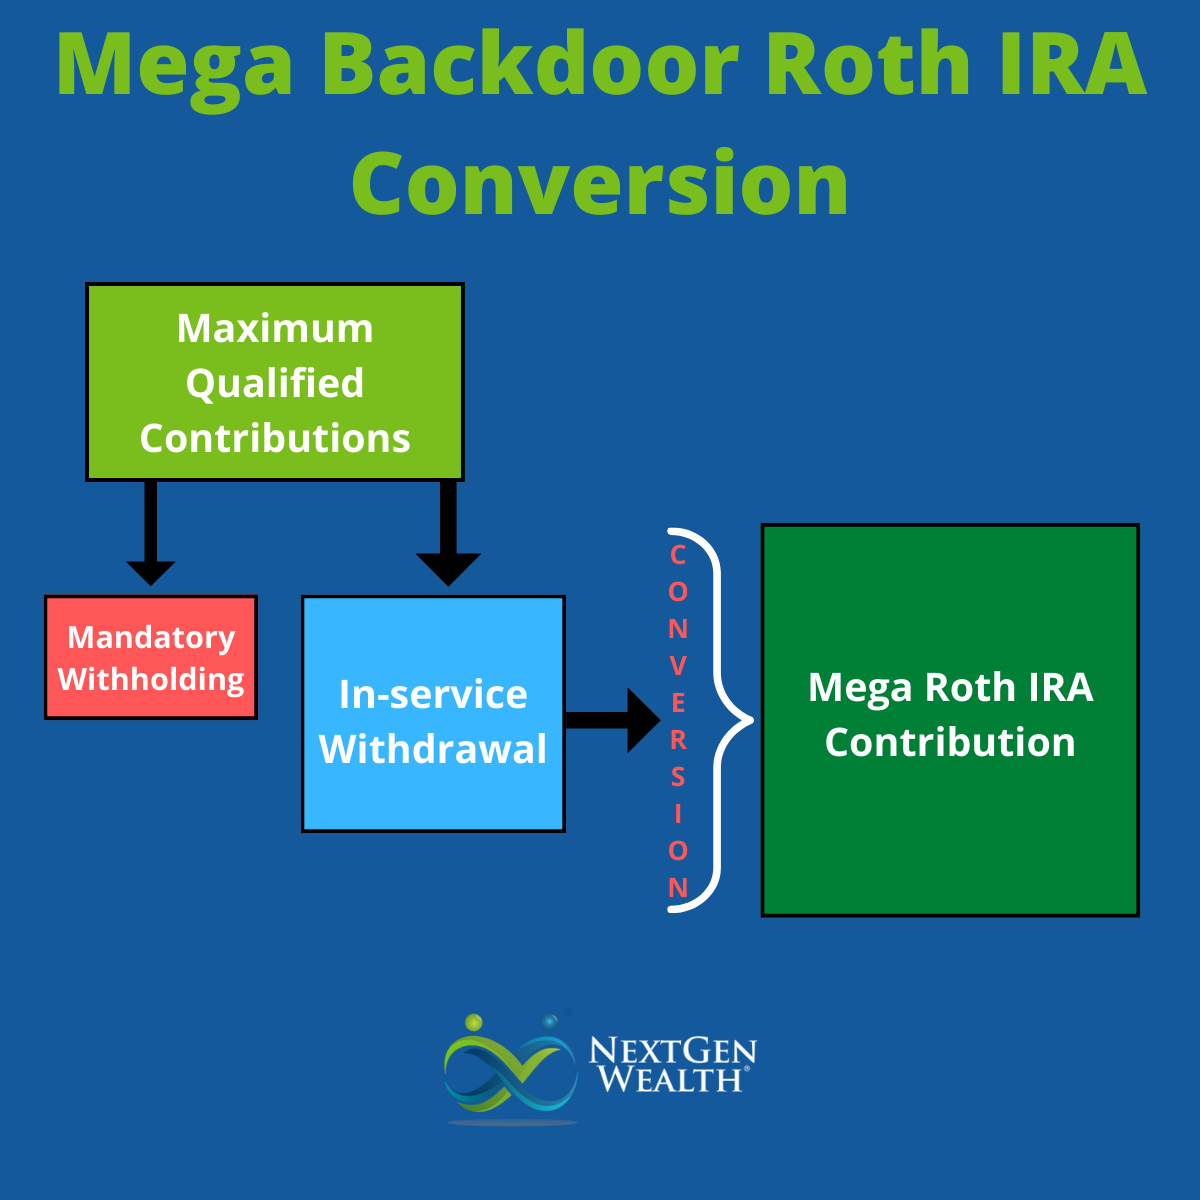 Mega Backdoor Roth IRA Conversion 401k